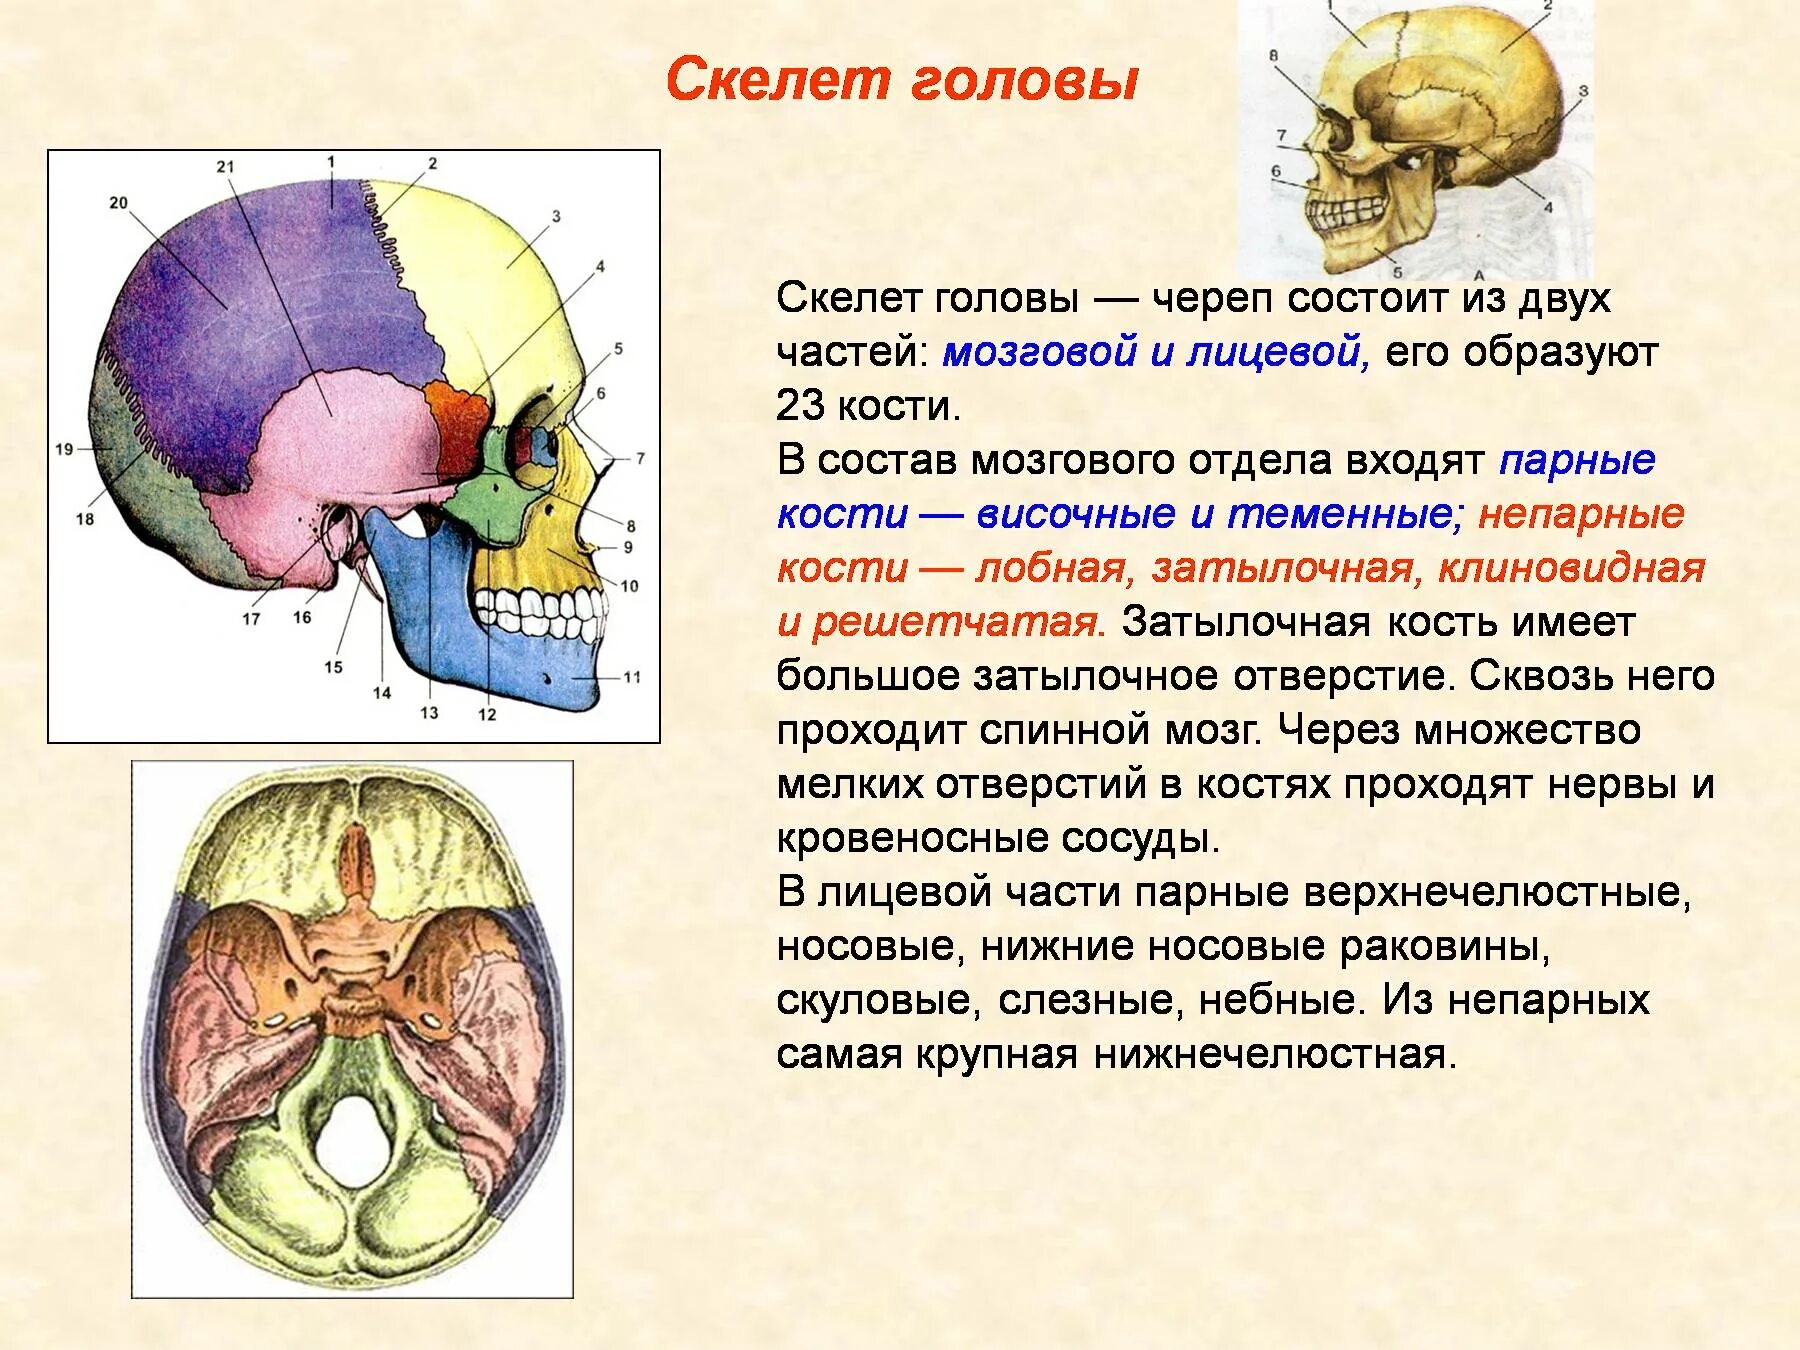 Скелет головы особенности. Отделы скелета головы. Скелет головы. Кости мозгового и лицевого черепа.